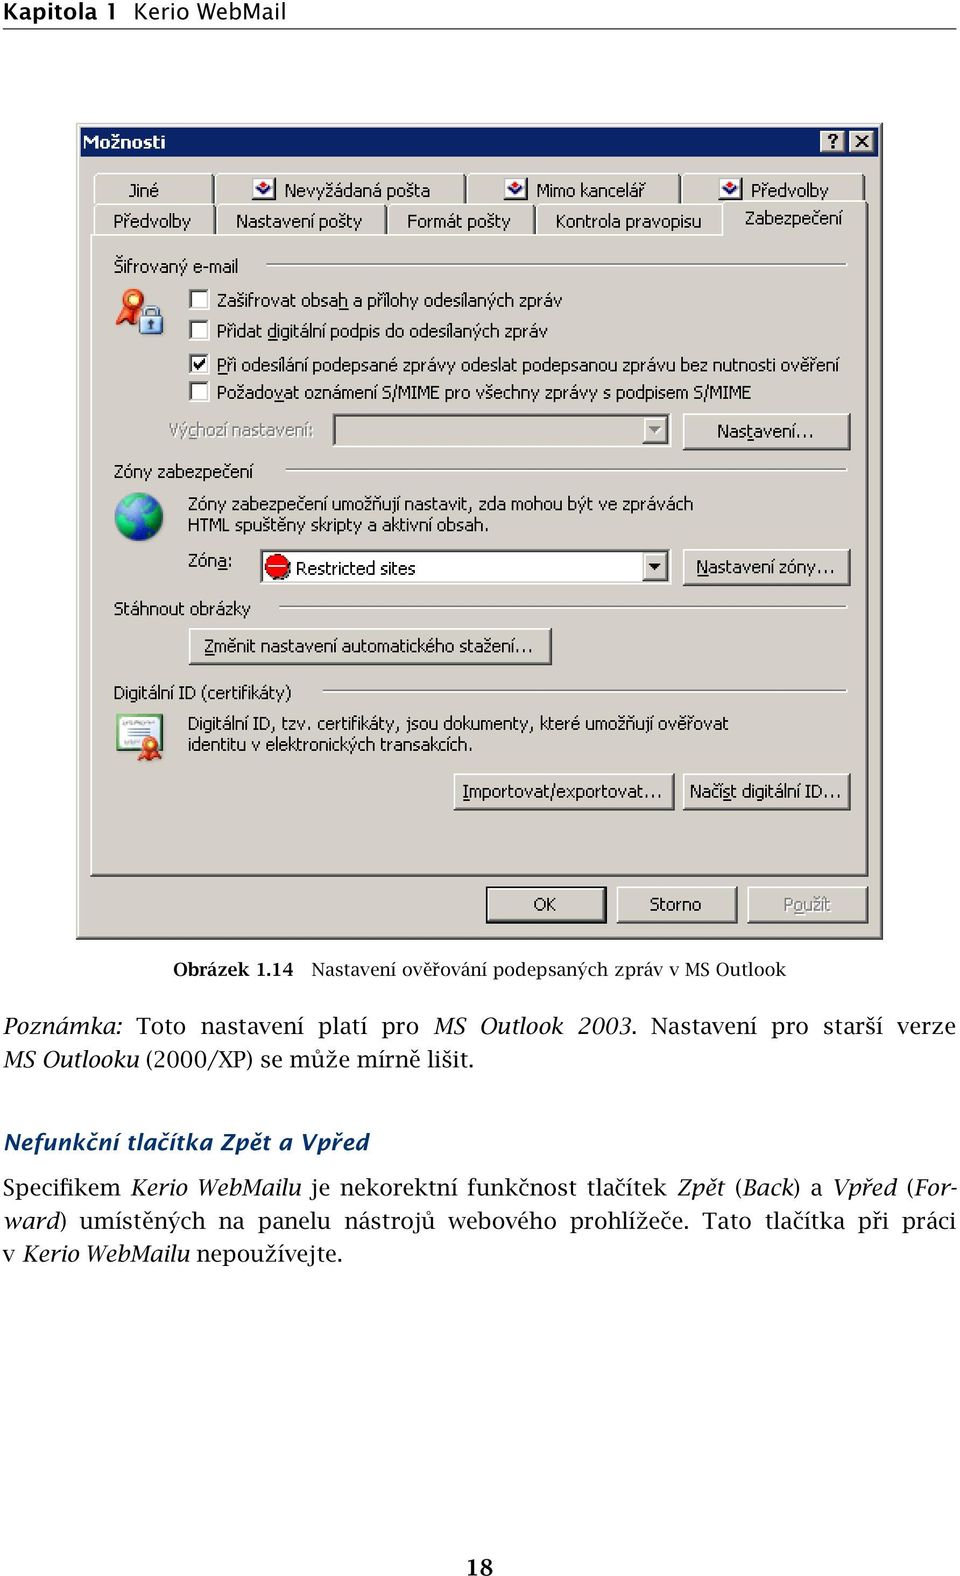 Nastavení pro starší verze MS Outlooku (2000/XP) se může mírně lišit.